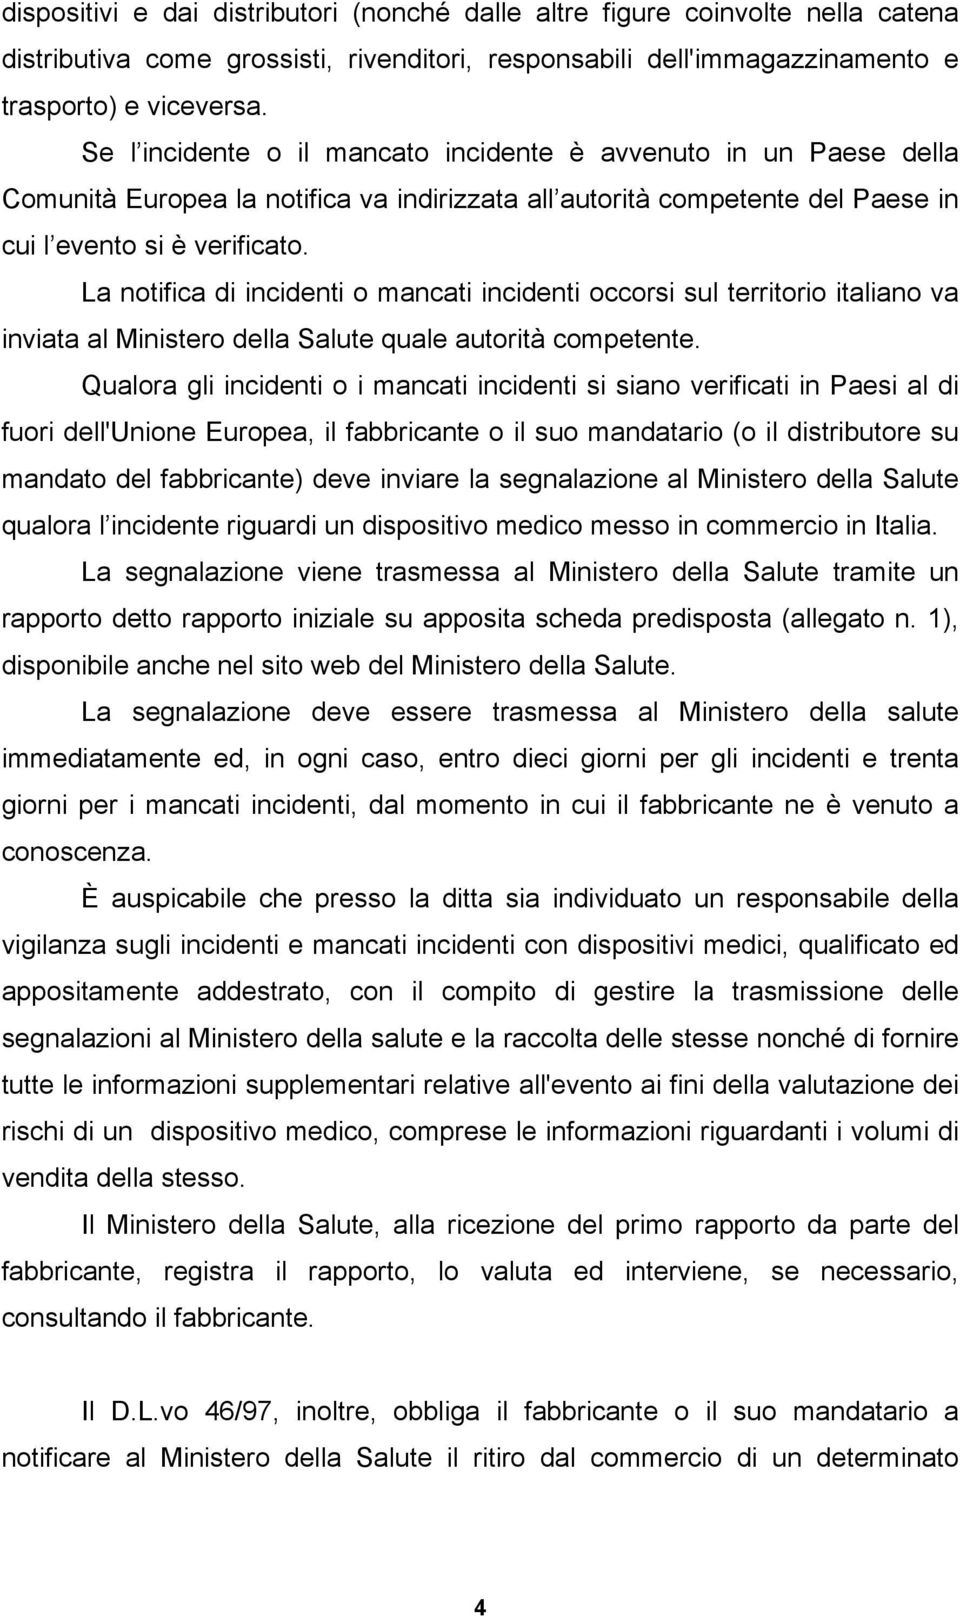 La notifica di incidenti o mancati incidenti occorsi sul territorio italiano va inviata al Ministero della Salute quale autorità competente.